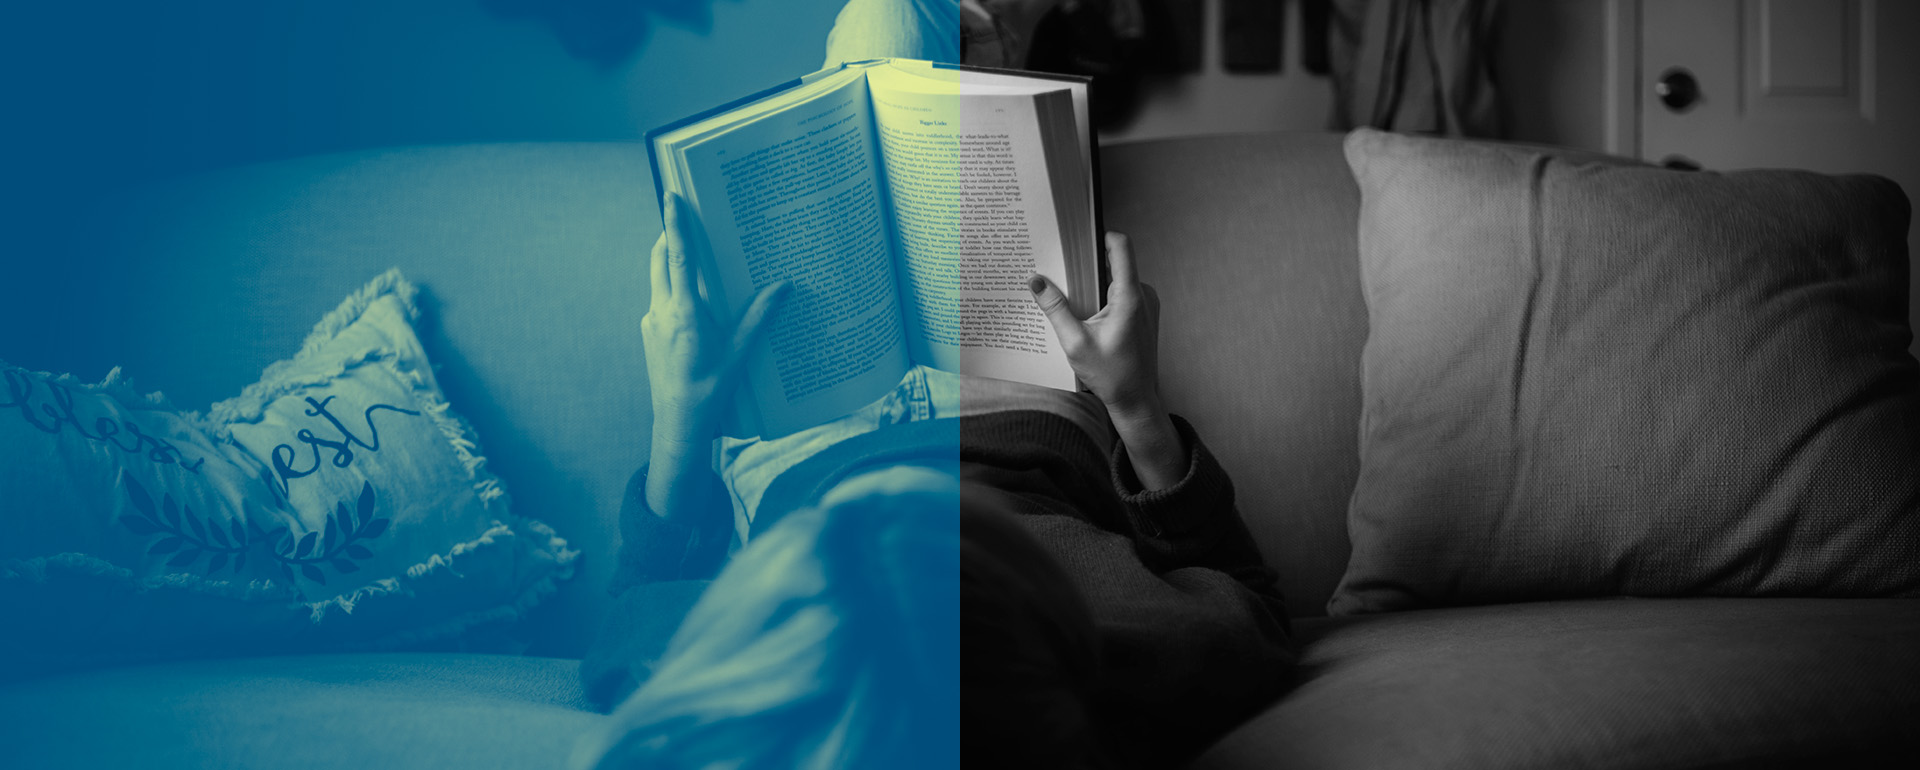 Nuorinainen makaa sohvalla jalat selkänojalla ja lukee kirjaa.